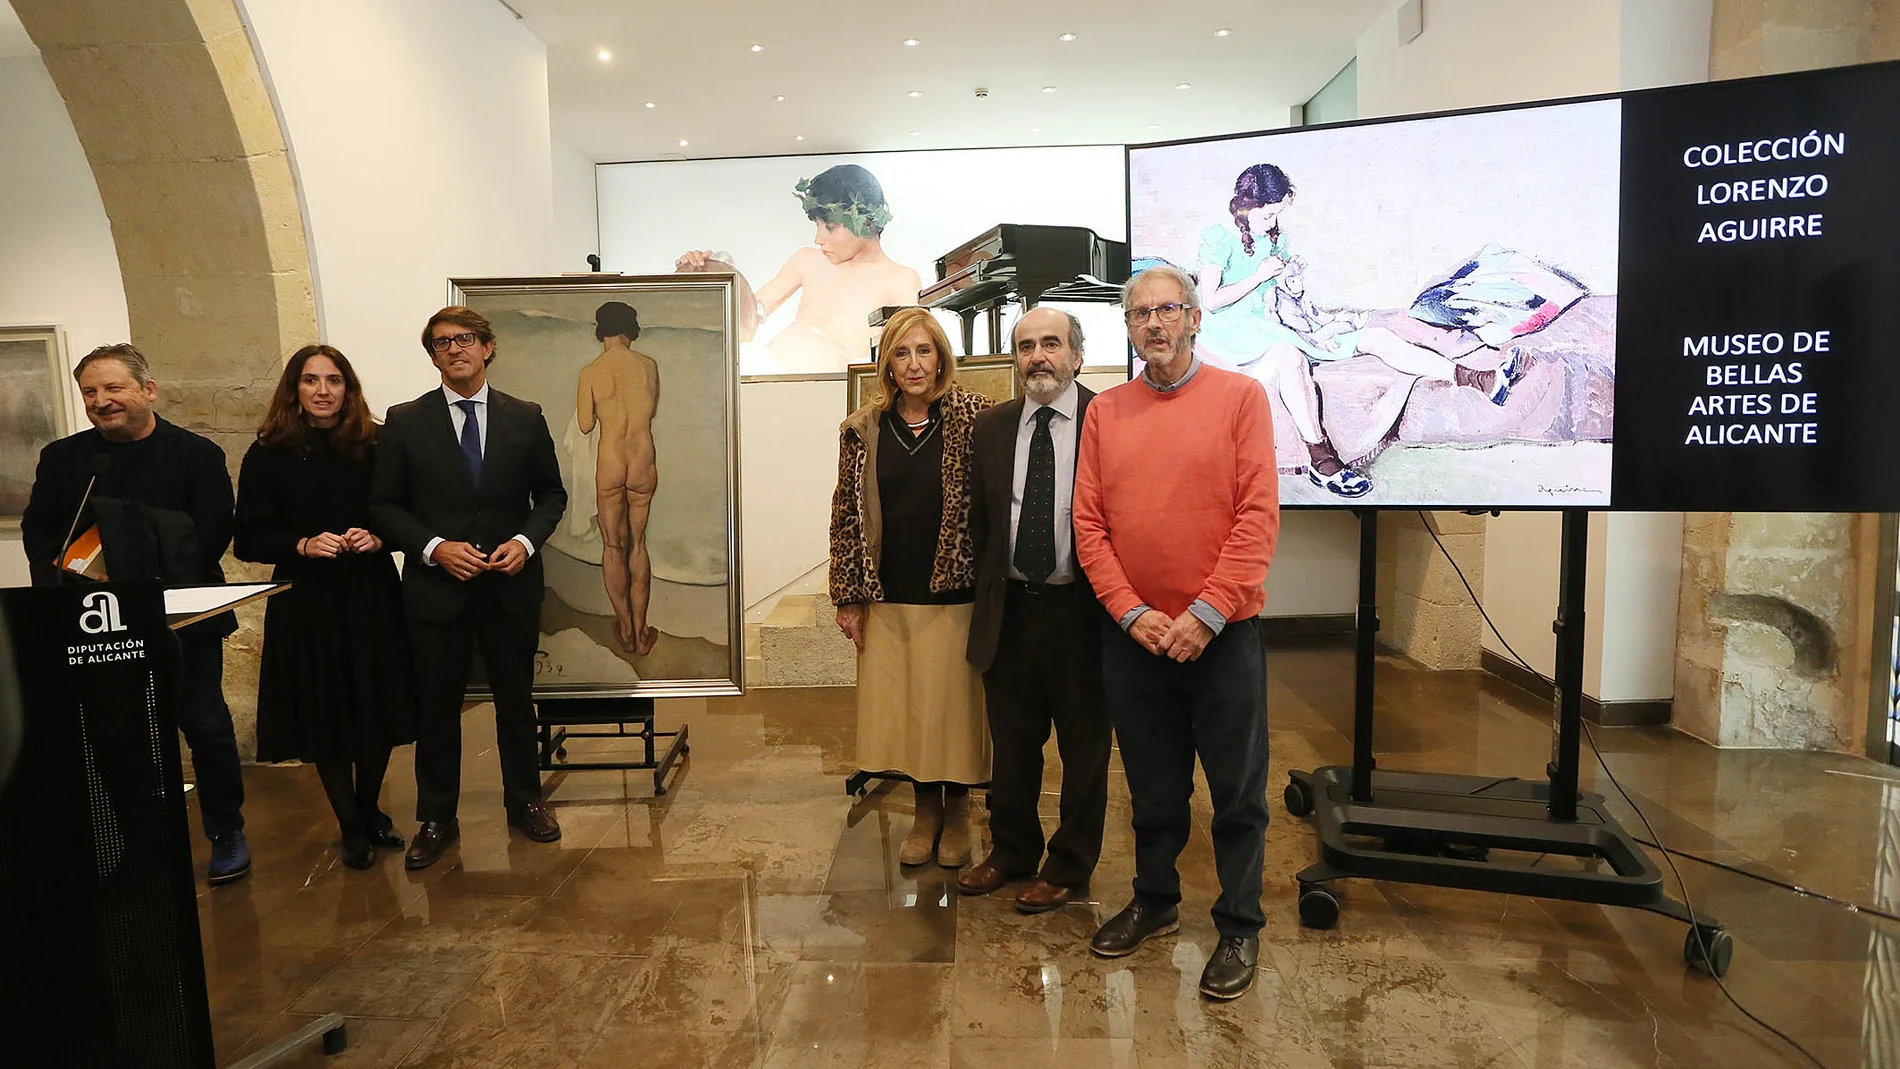 Hoy se ha materializado la entrega del legado de Lorenzo Aguirre al Museo de Bellas Artes de Alicante, que depende de la Diputación.